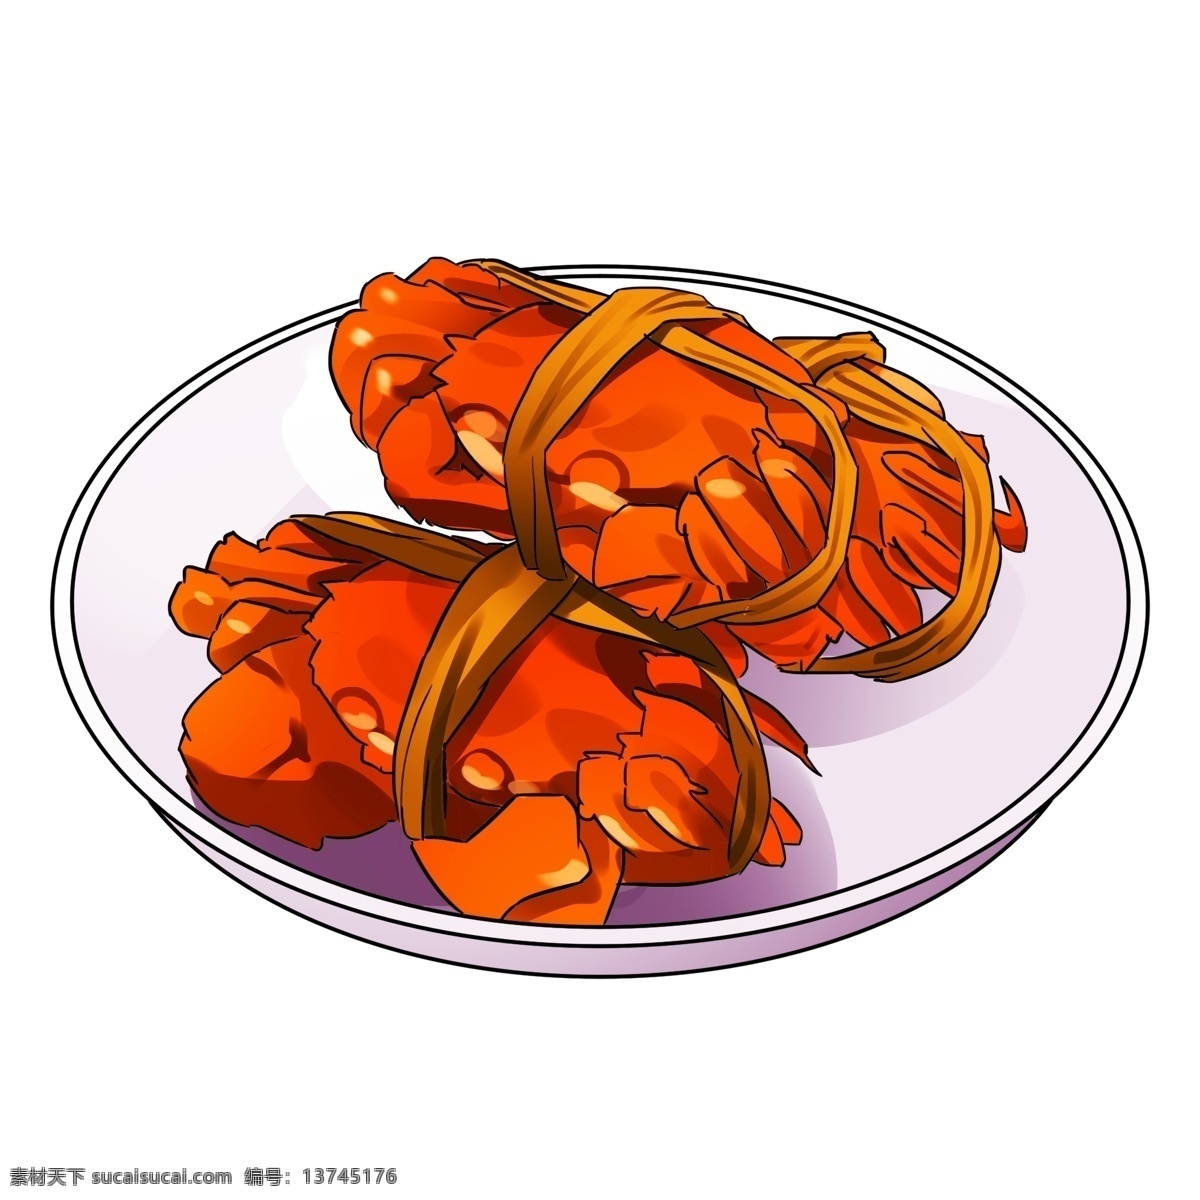 手绘 卡通 新年 美味 海鲜 新年美食 蟹 卡通蟹 新年美味 手绘蟹 手绘美食 美味食物 美味蟹 手绘海鲜 插画